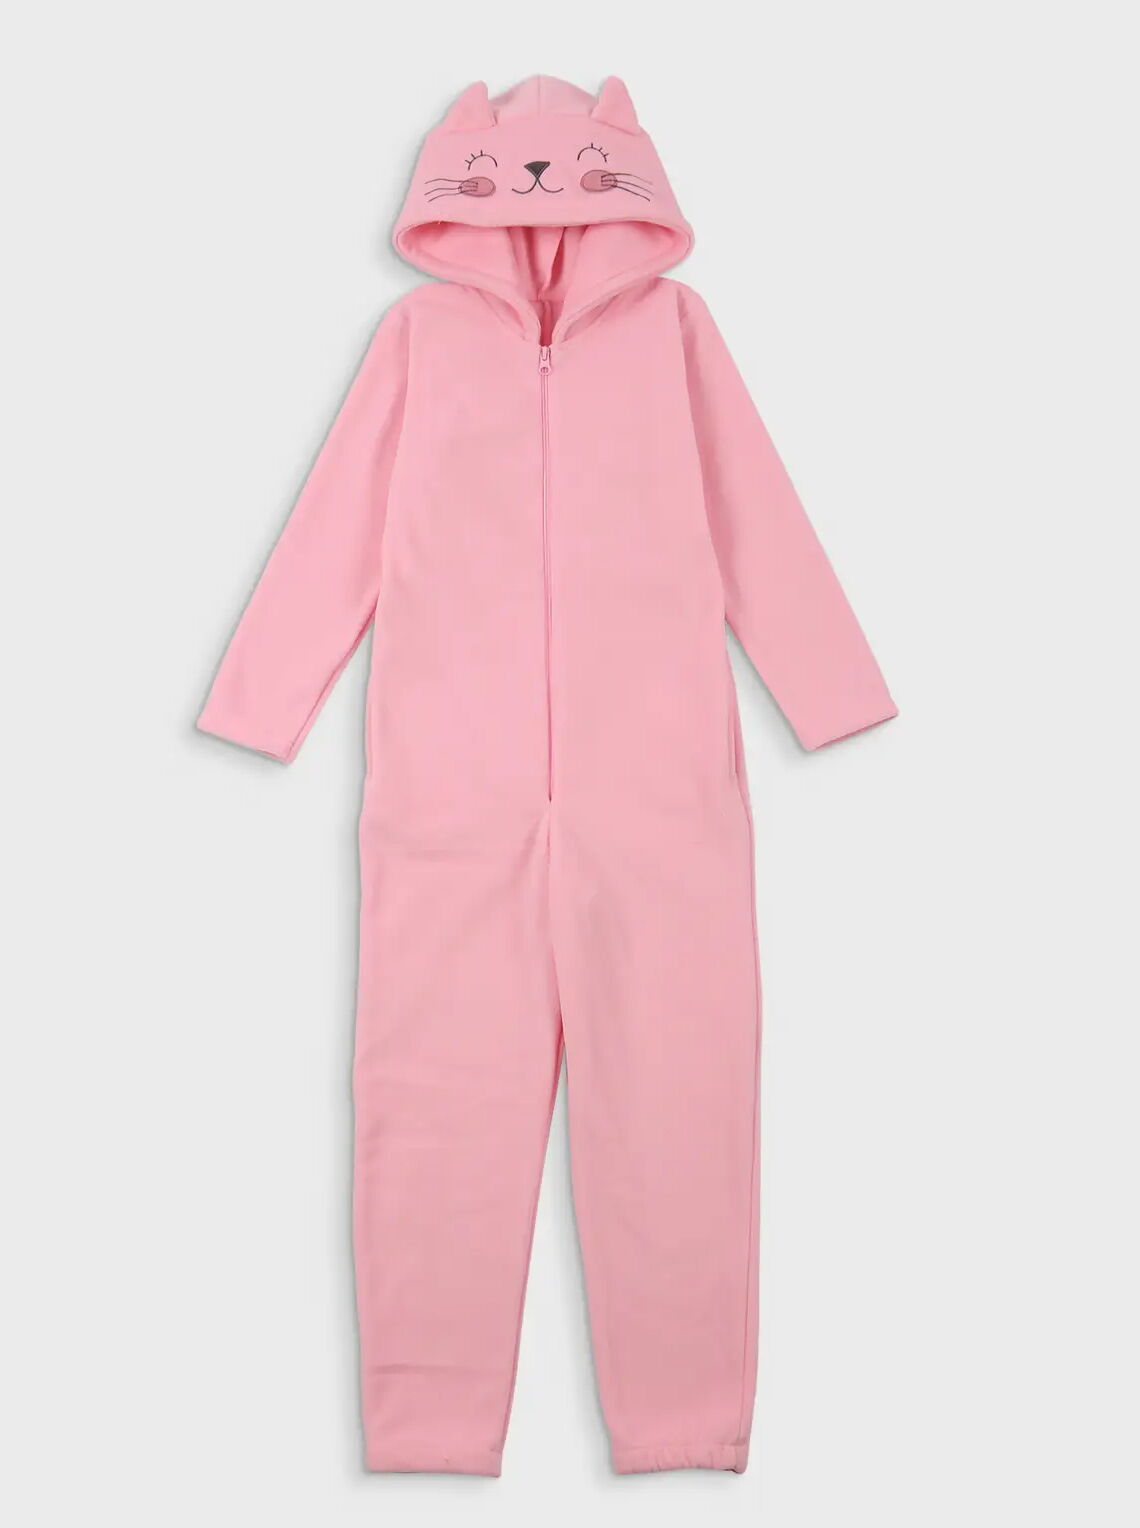 Пижама-кигуруми флис для девочки Фламинго Котик розовая 779-1405 - цена